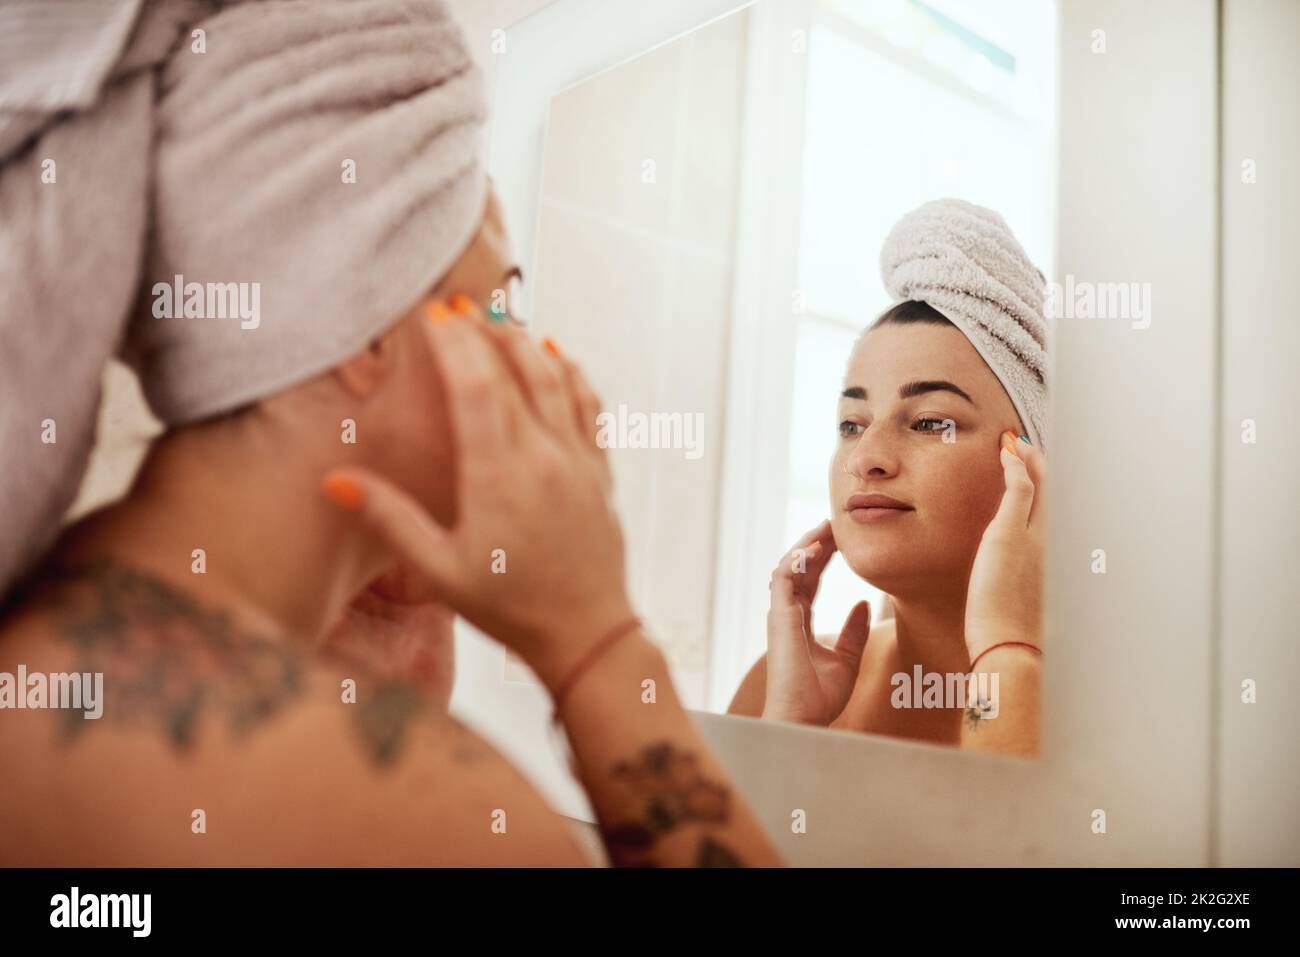 Ce que vous faites est un reflet de vous. Photo d'une jeune femme attirante inspectant son visage dans le miroir de la salle de bains. Banque D'Images